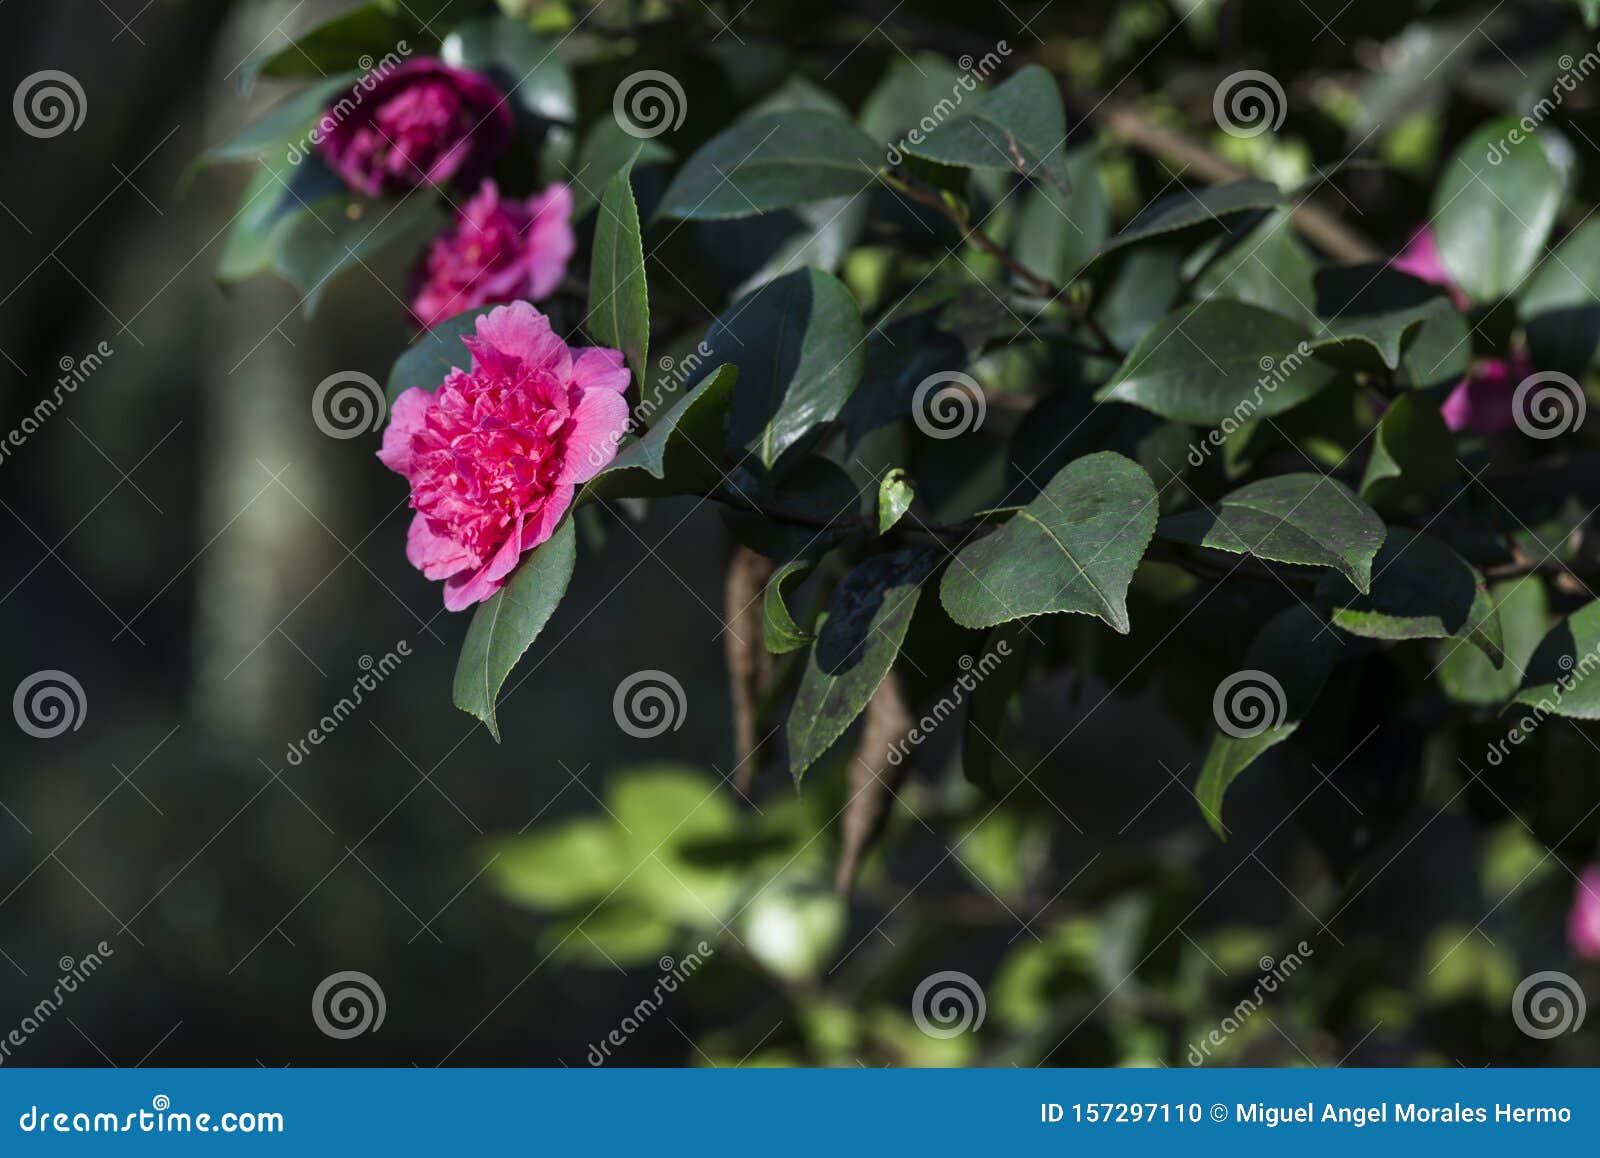 Detalle De Una Camellia Japonica Roja En El Ã¡rbol Foto de archivo - Imagen  de flor, rojo: 157297110